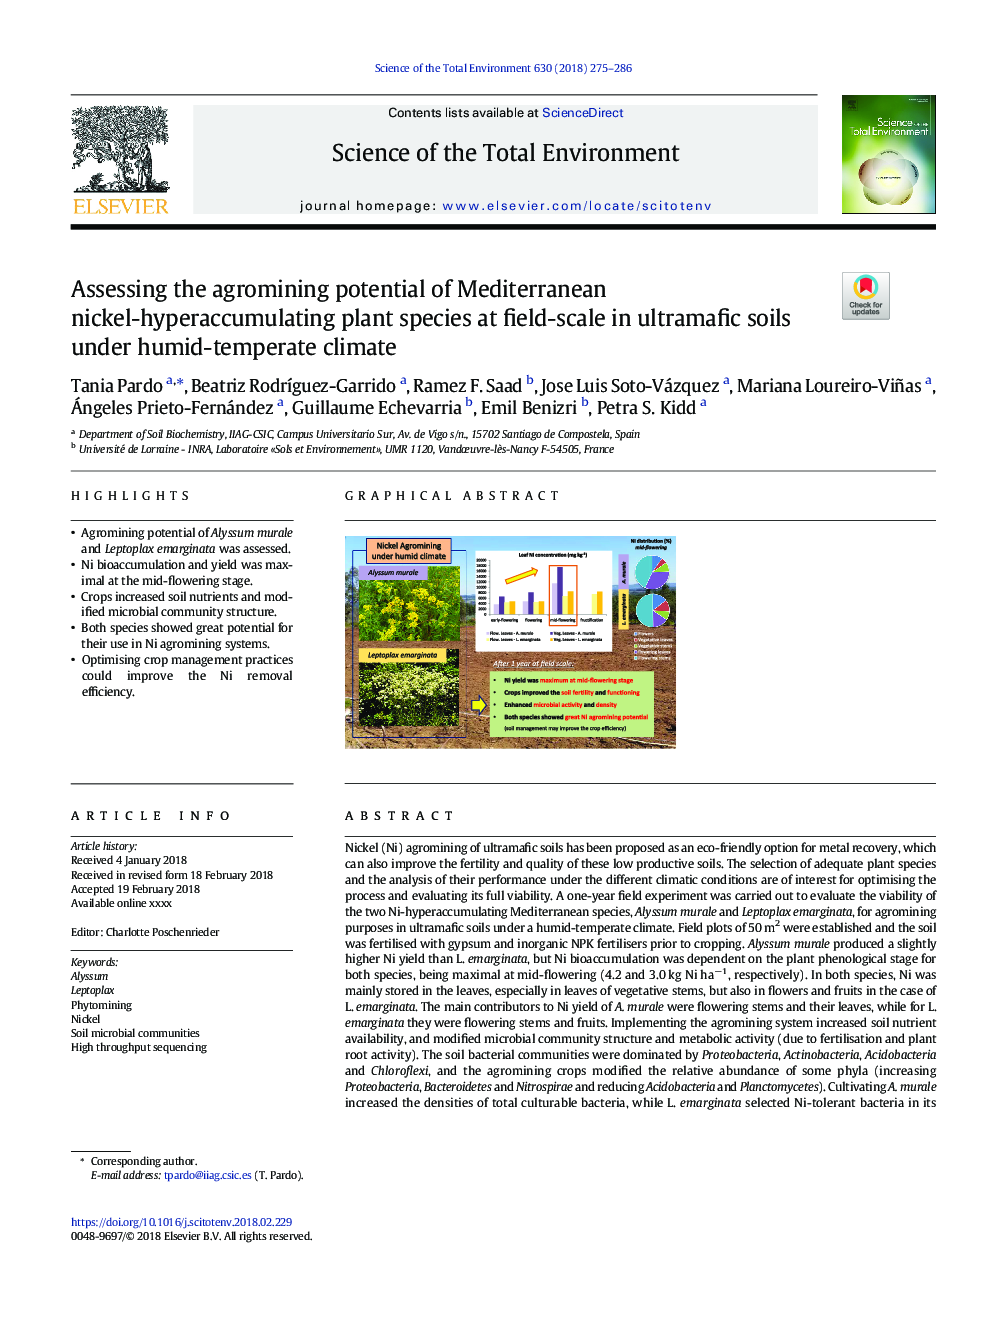 ارزیابی پتانسیل زراعی گونه های گیاهی غنی از نیکل مدیترانه ای در سطح زمین در خاک های اولترامافیک تحت شرایط آب و هوایی مرطوب 